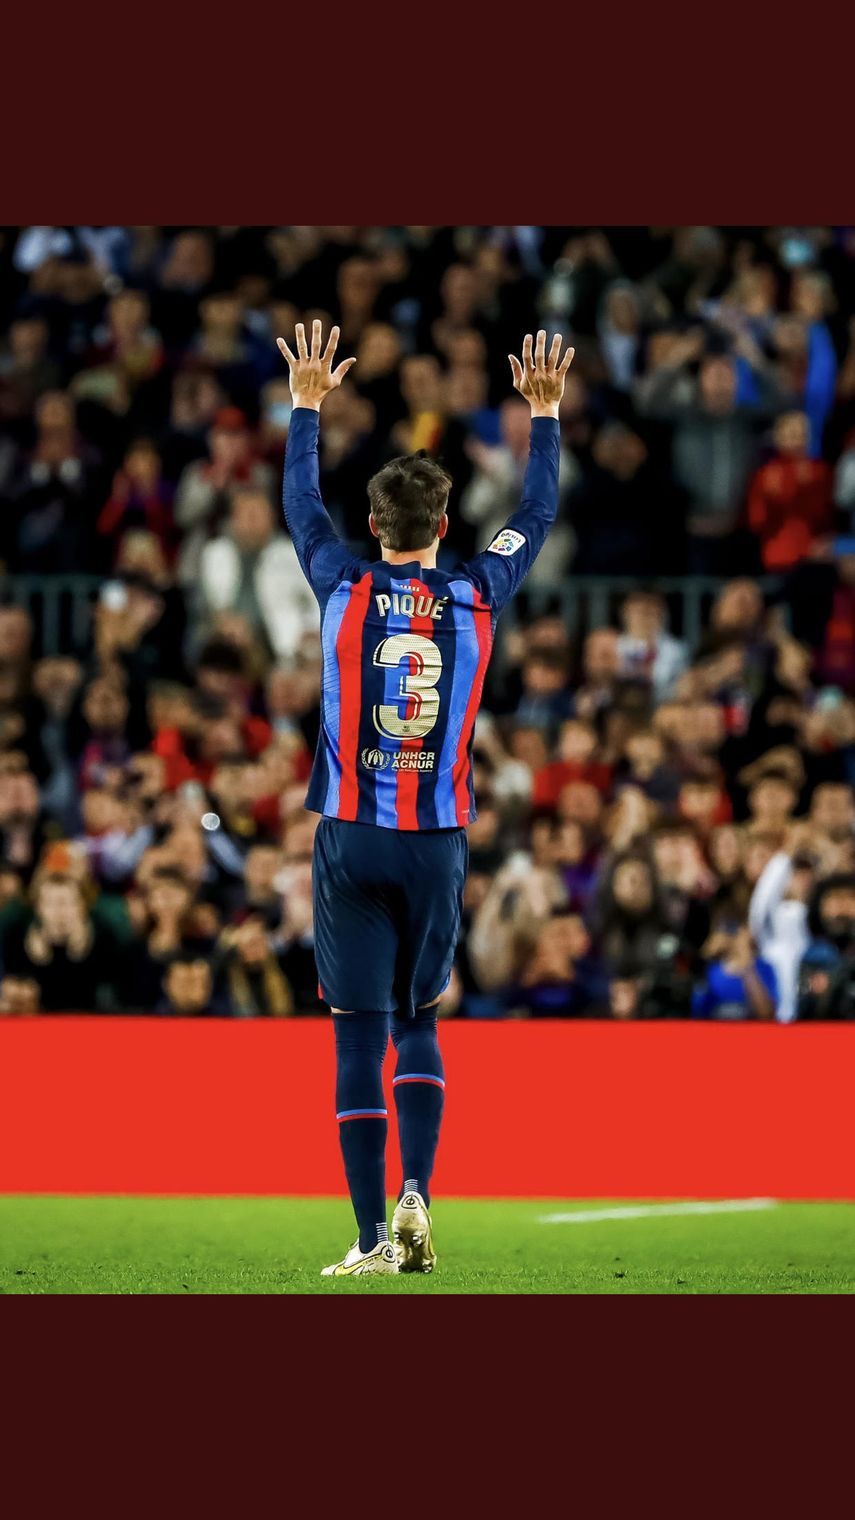 جيرارد بيكيه مدافع نادي برشلونة الإسباني يُودع الملاعب